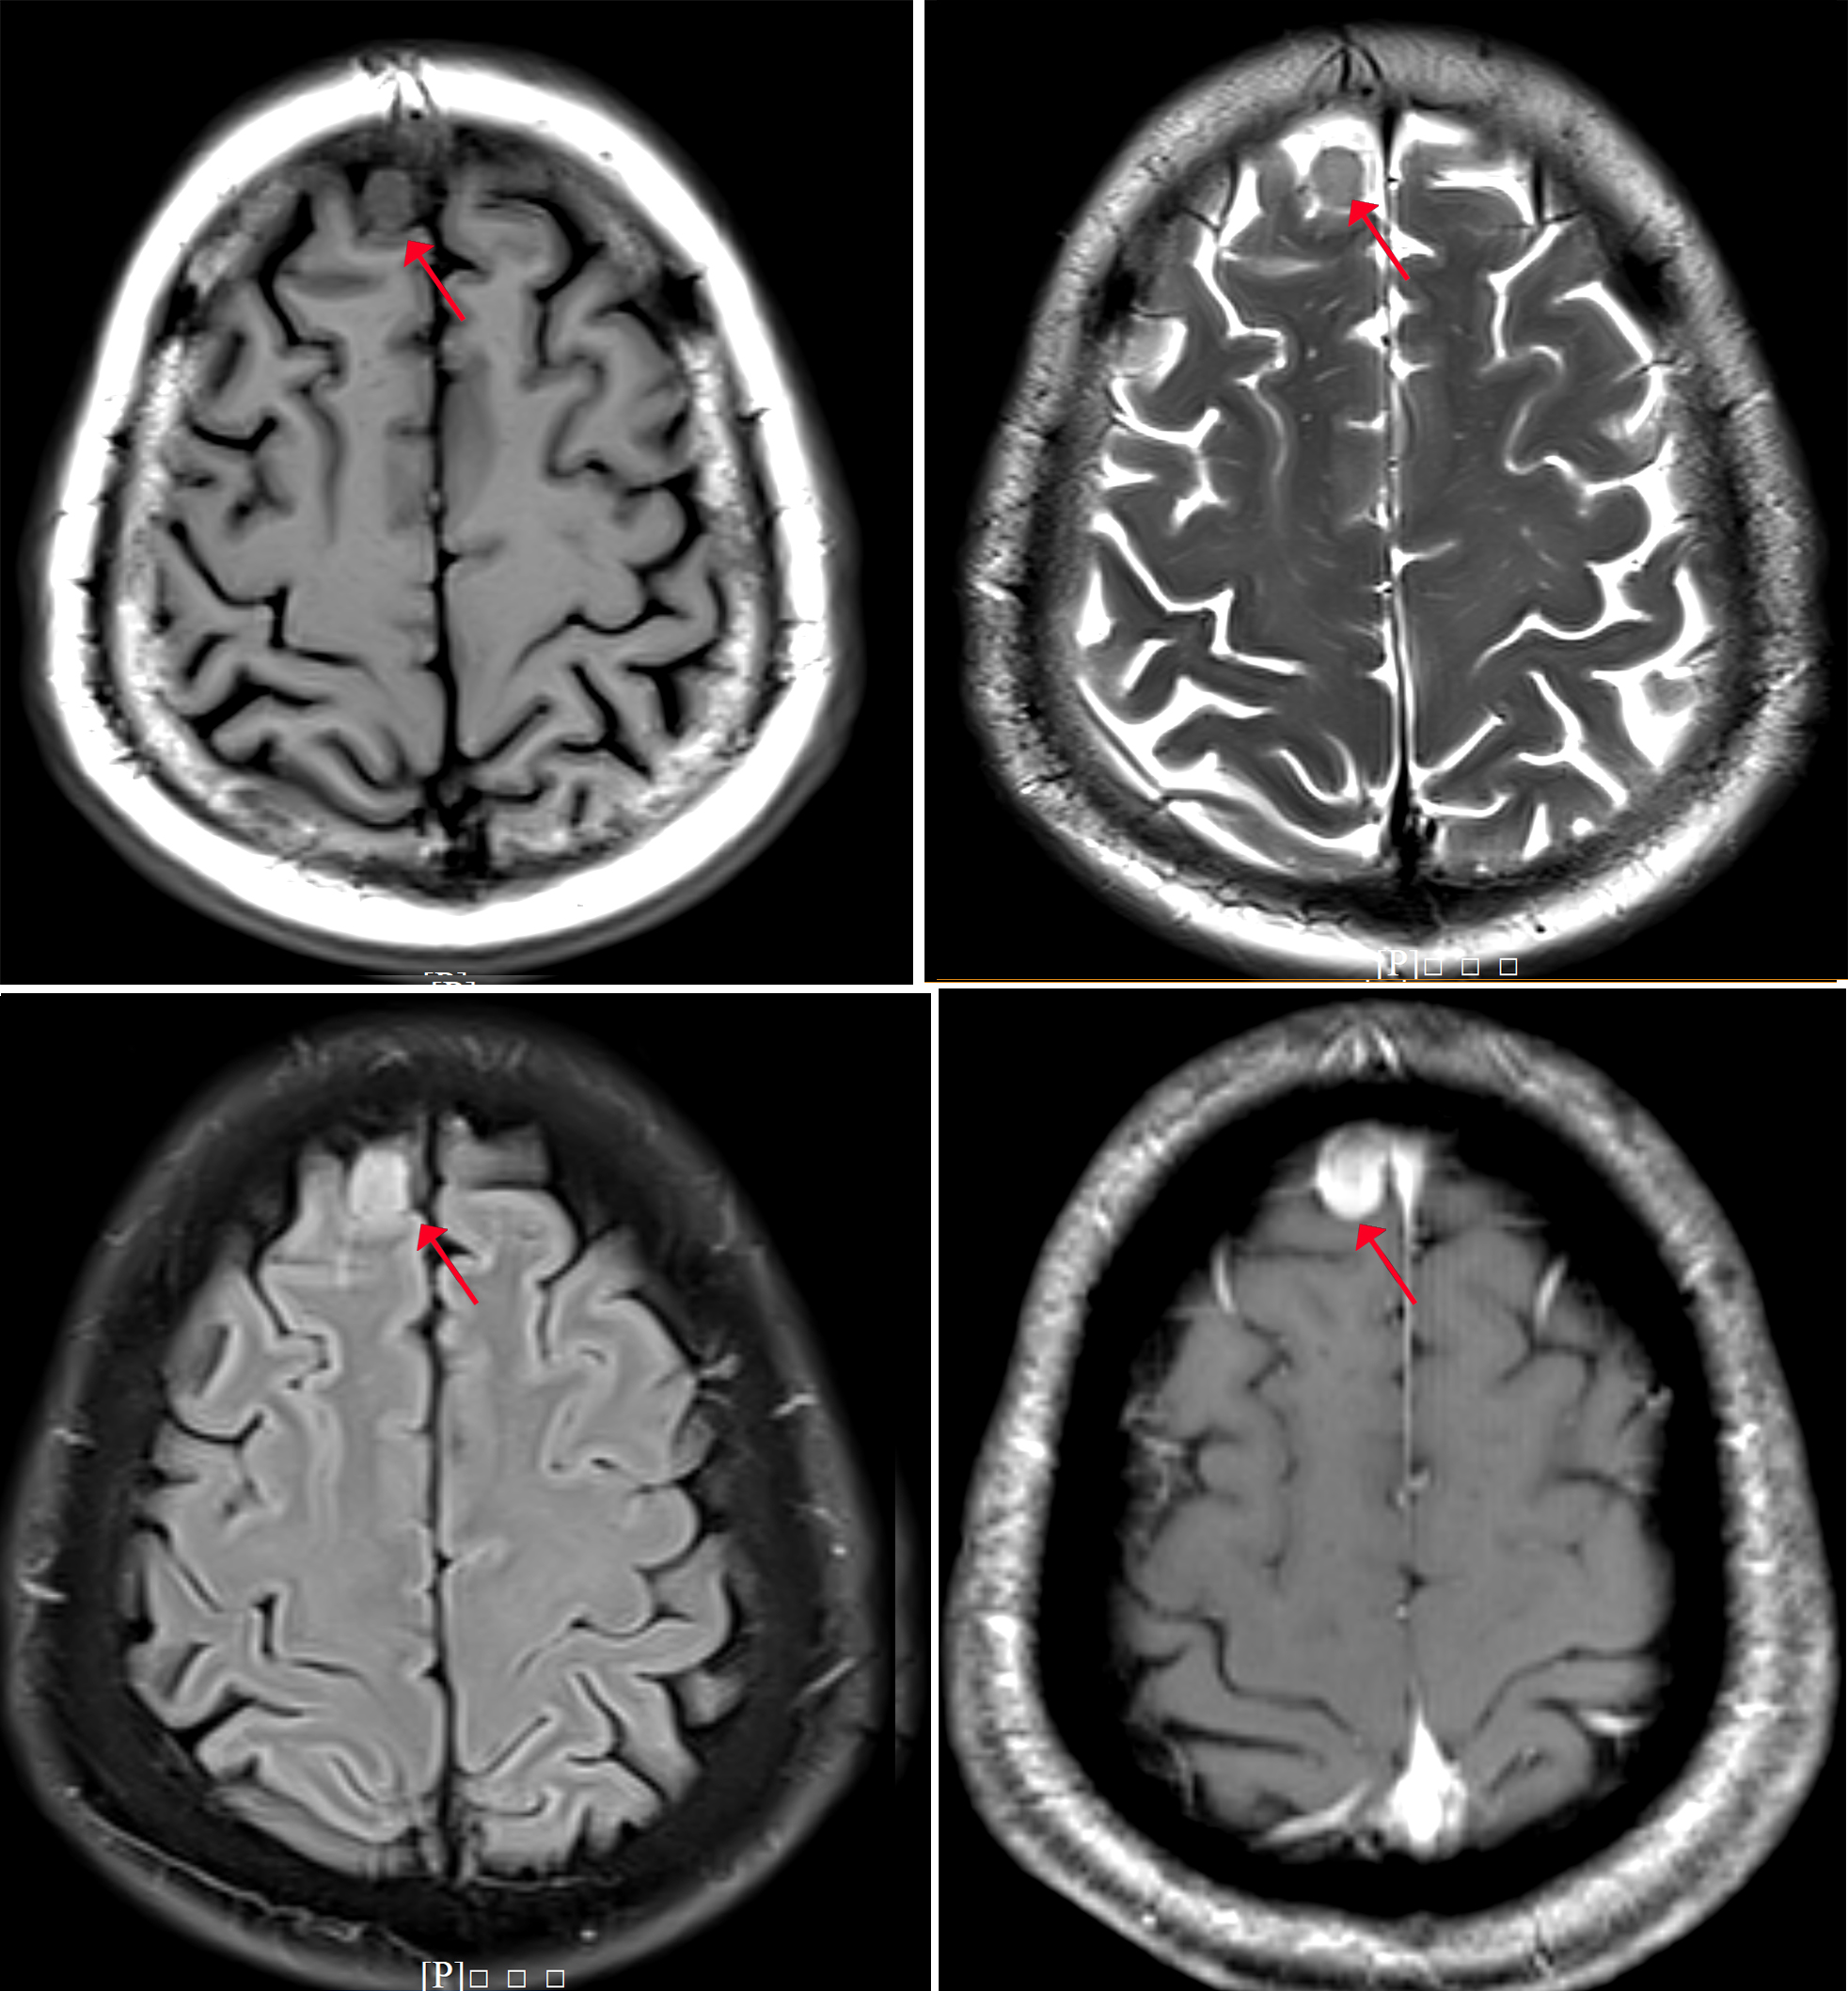 高清颅脑MRI最全冠状位影像解剖